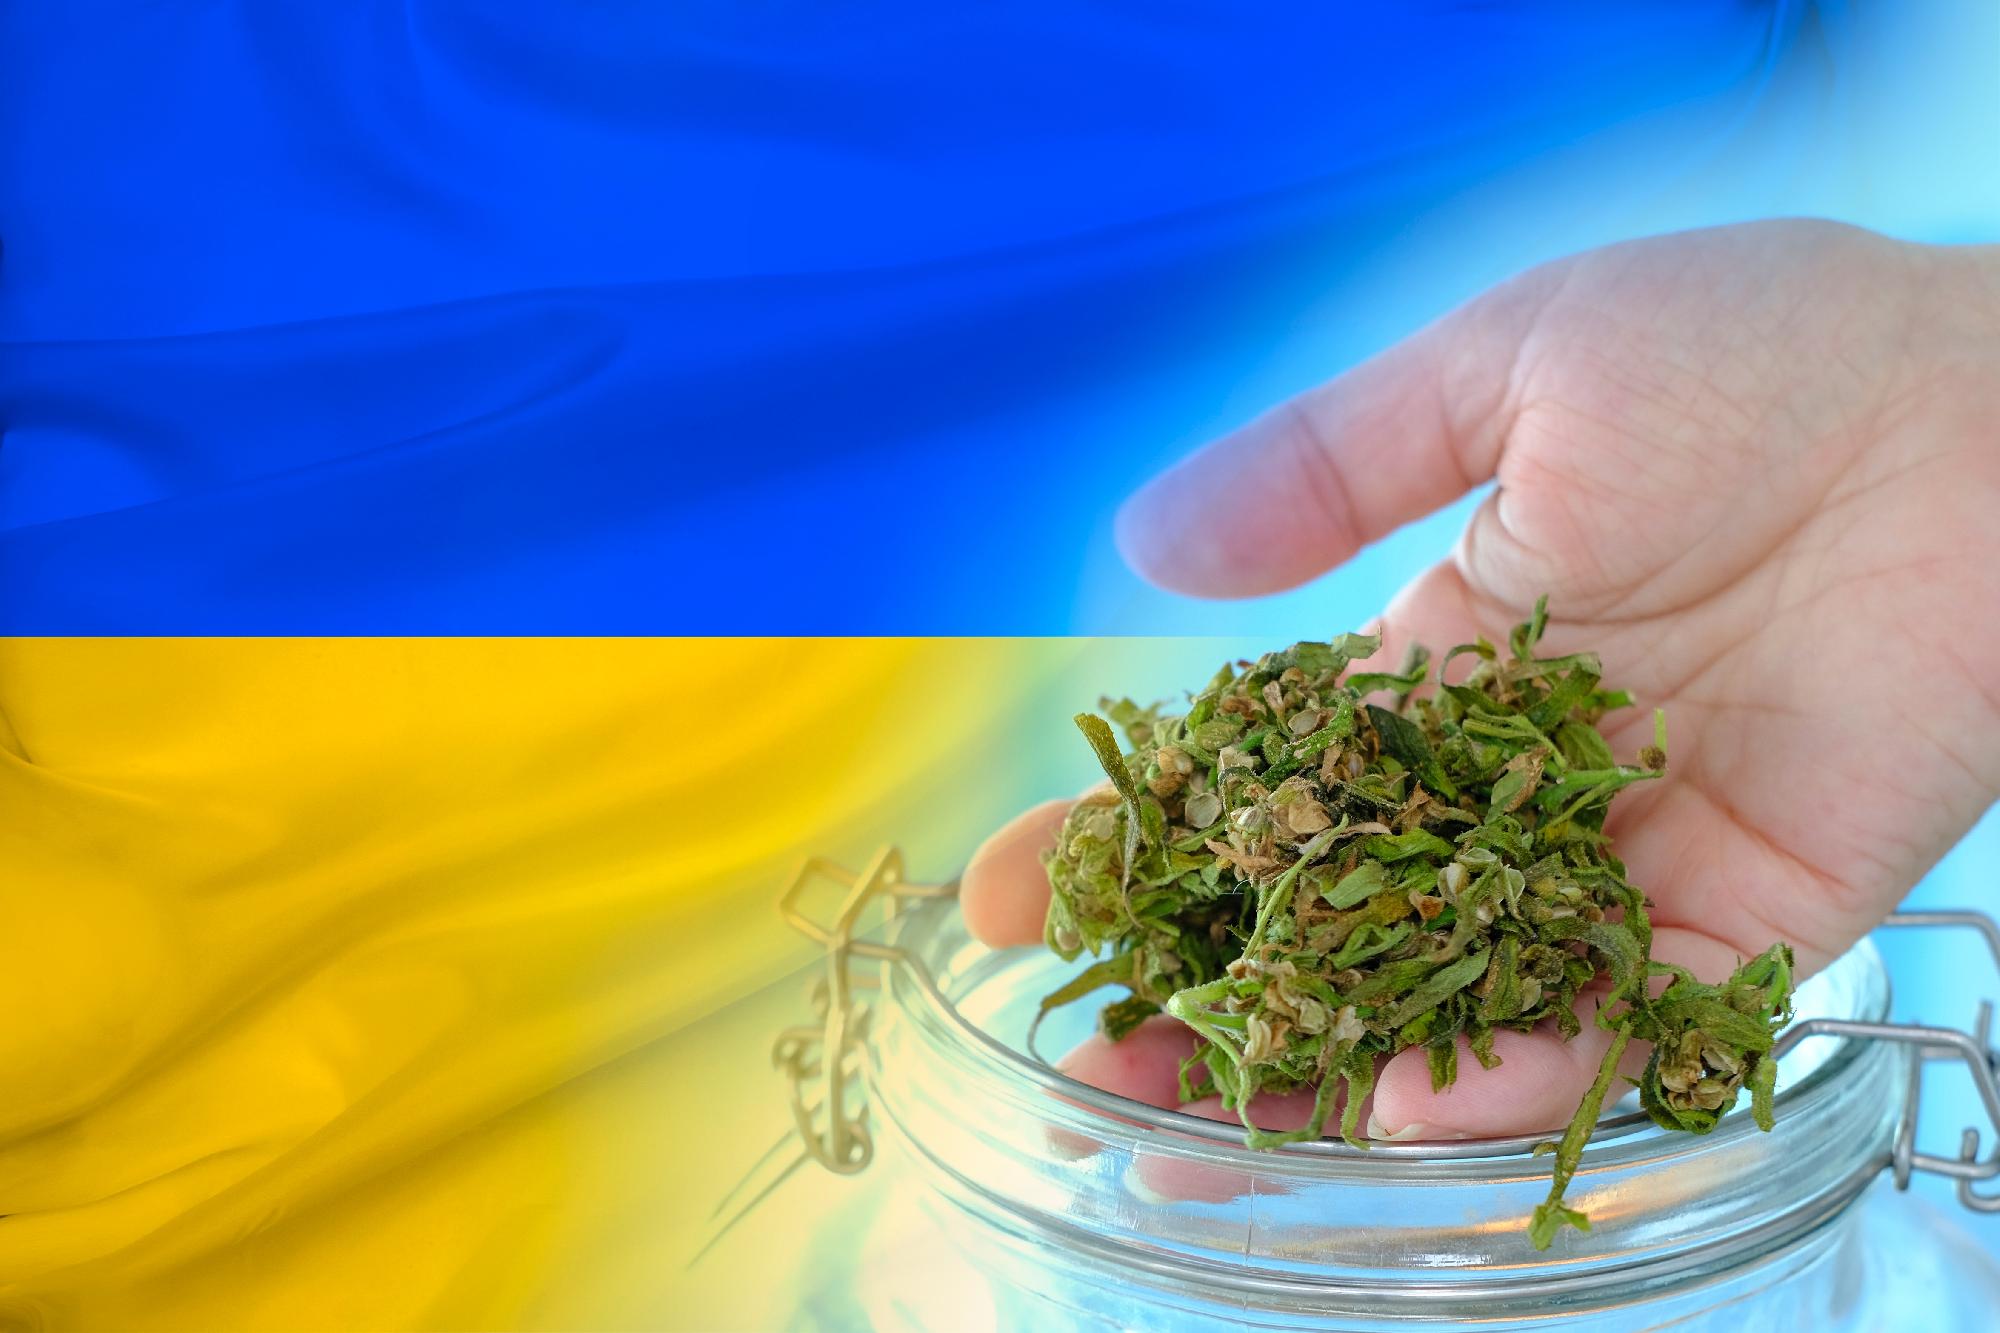 Az amerikai fegyveres támogatás kéz a kézben jár a „kultúrmisszióval”: Ukrajnában legalizálták a marihuánát